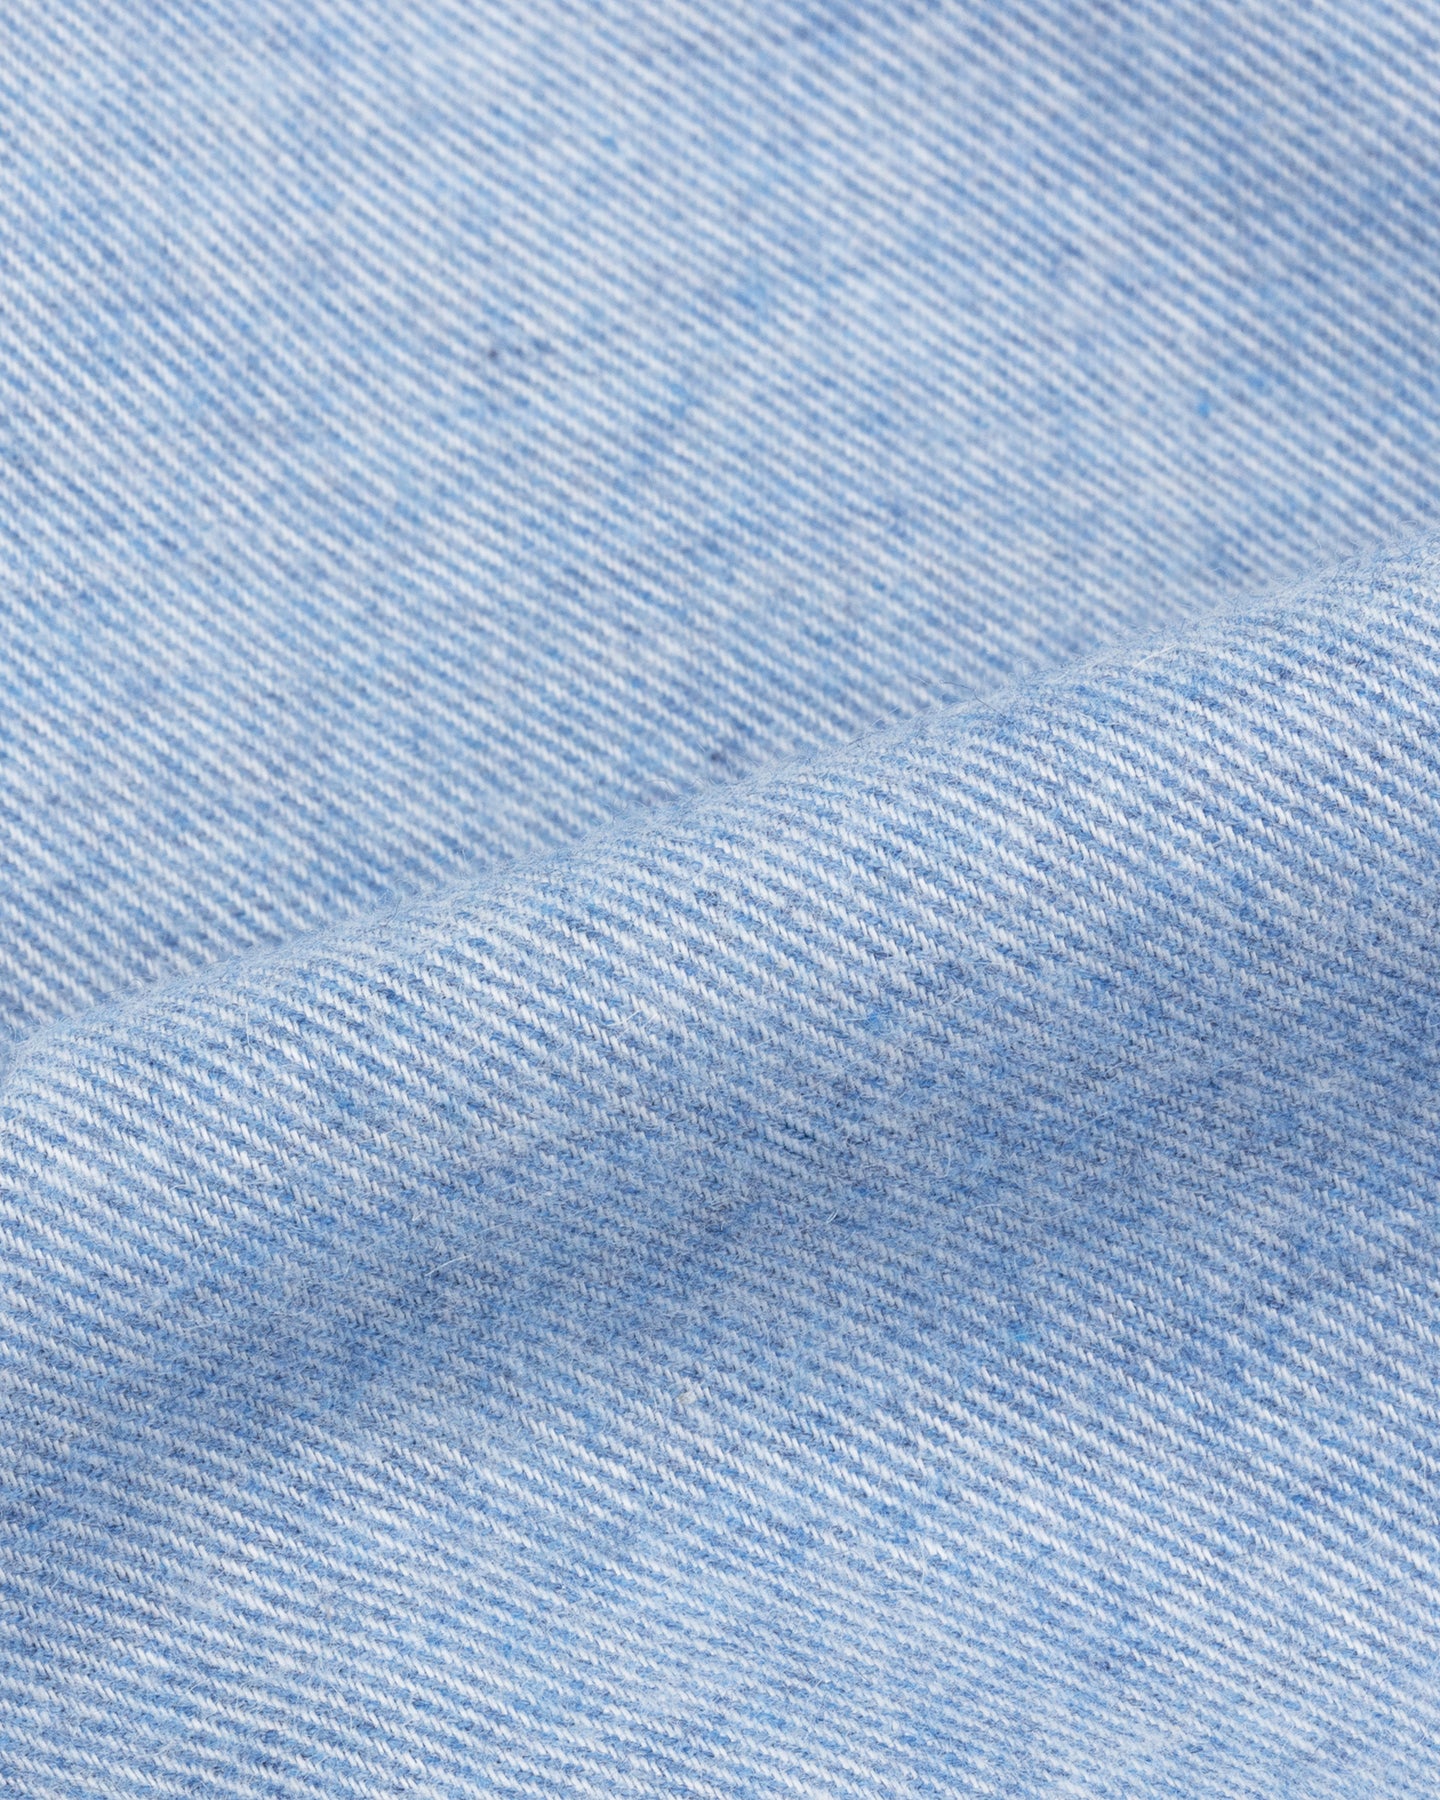 Light blue cotton cashmer flannel shirt fabric